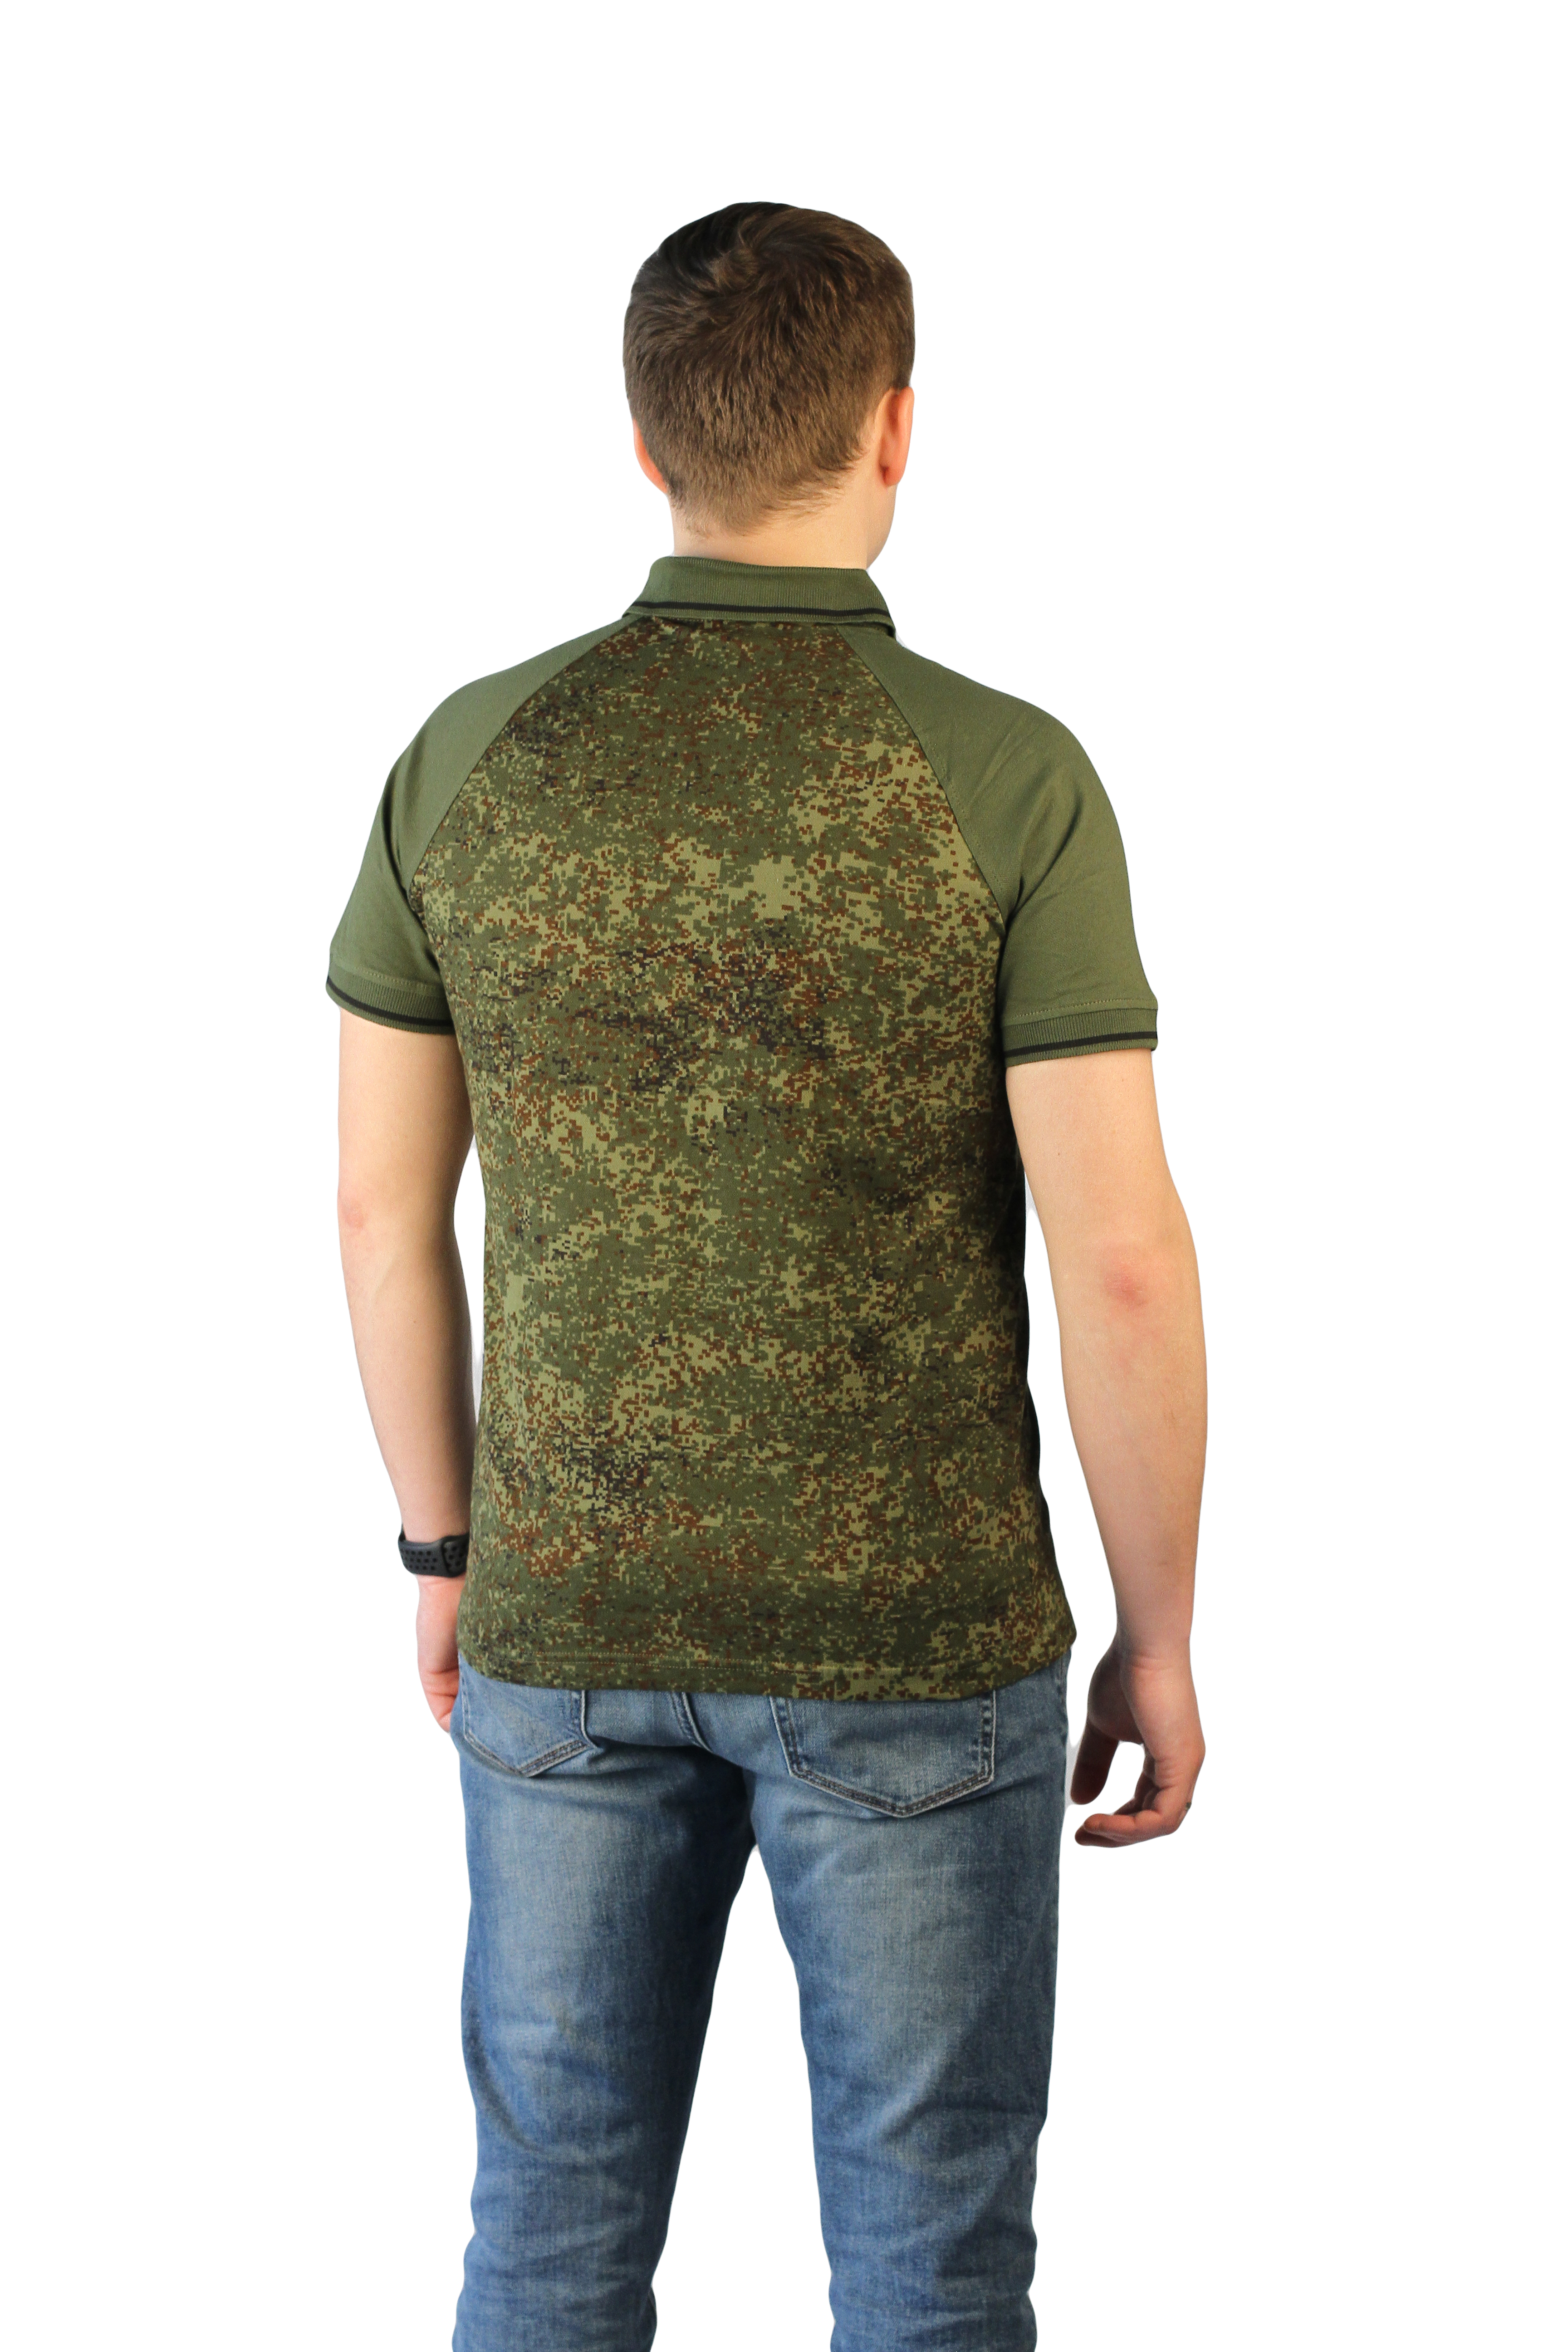 Рубашка-поло "Цифра зеленая" с коротким рукавом